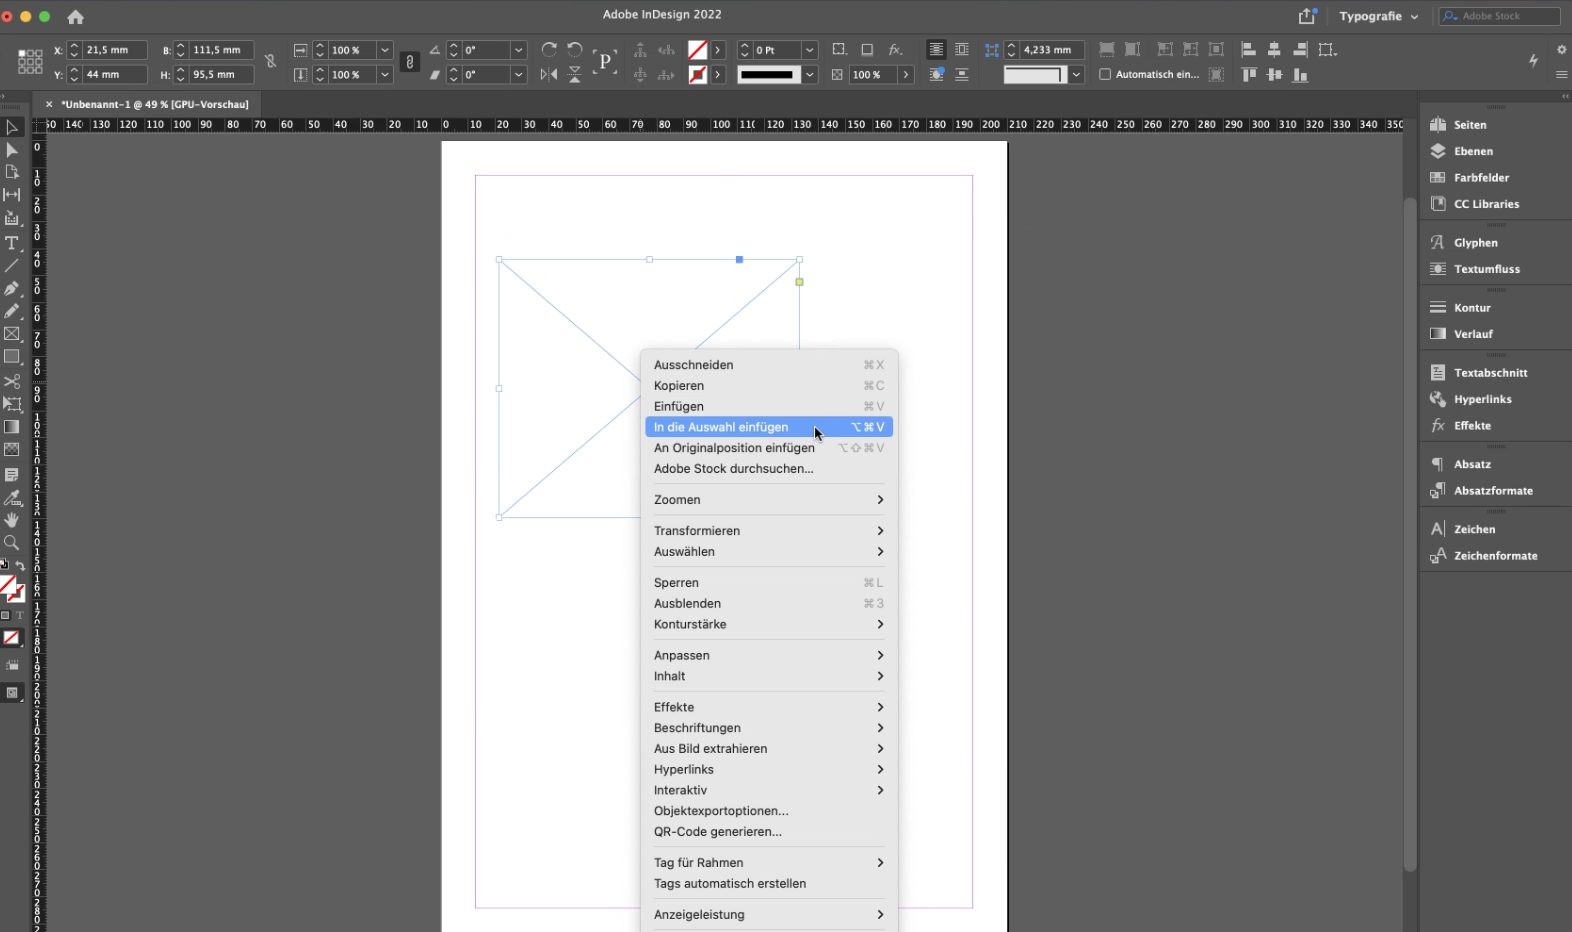 Screenshot Adobe InDesign - In die Auswahl einfügen